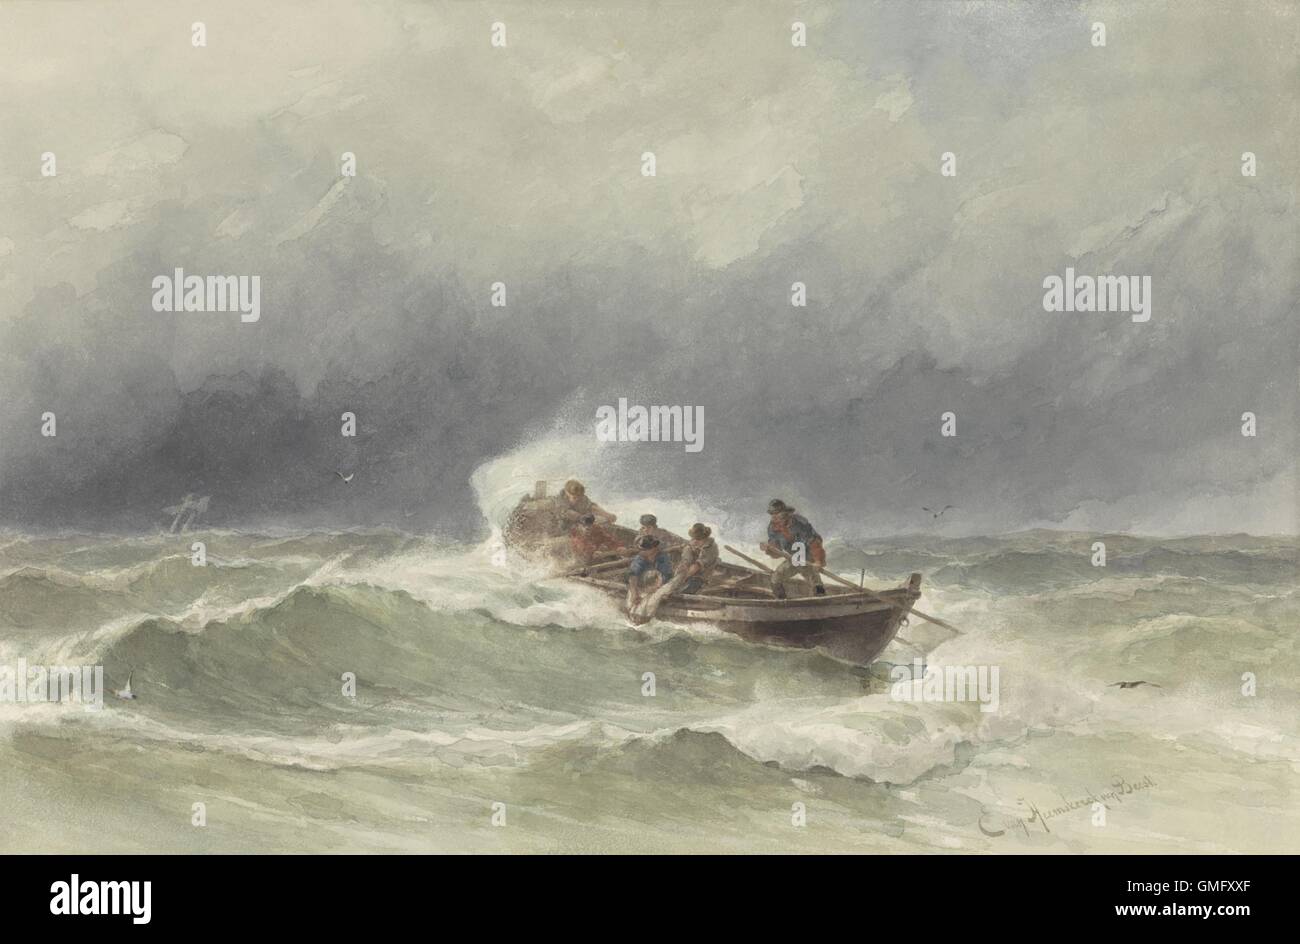 Rettung auf See, von Jacob Eduard van Heemskerck van Beest, c. 1850-90, niederländische Aquarell Malerei. Sechs Mann Ruderboot zieht einen Seemann im Ausland im Sturm geblasen offene Meer (BSLOC 2016 2 33) Stockfoto